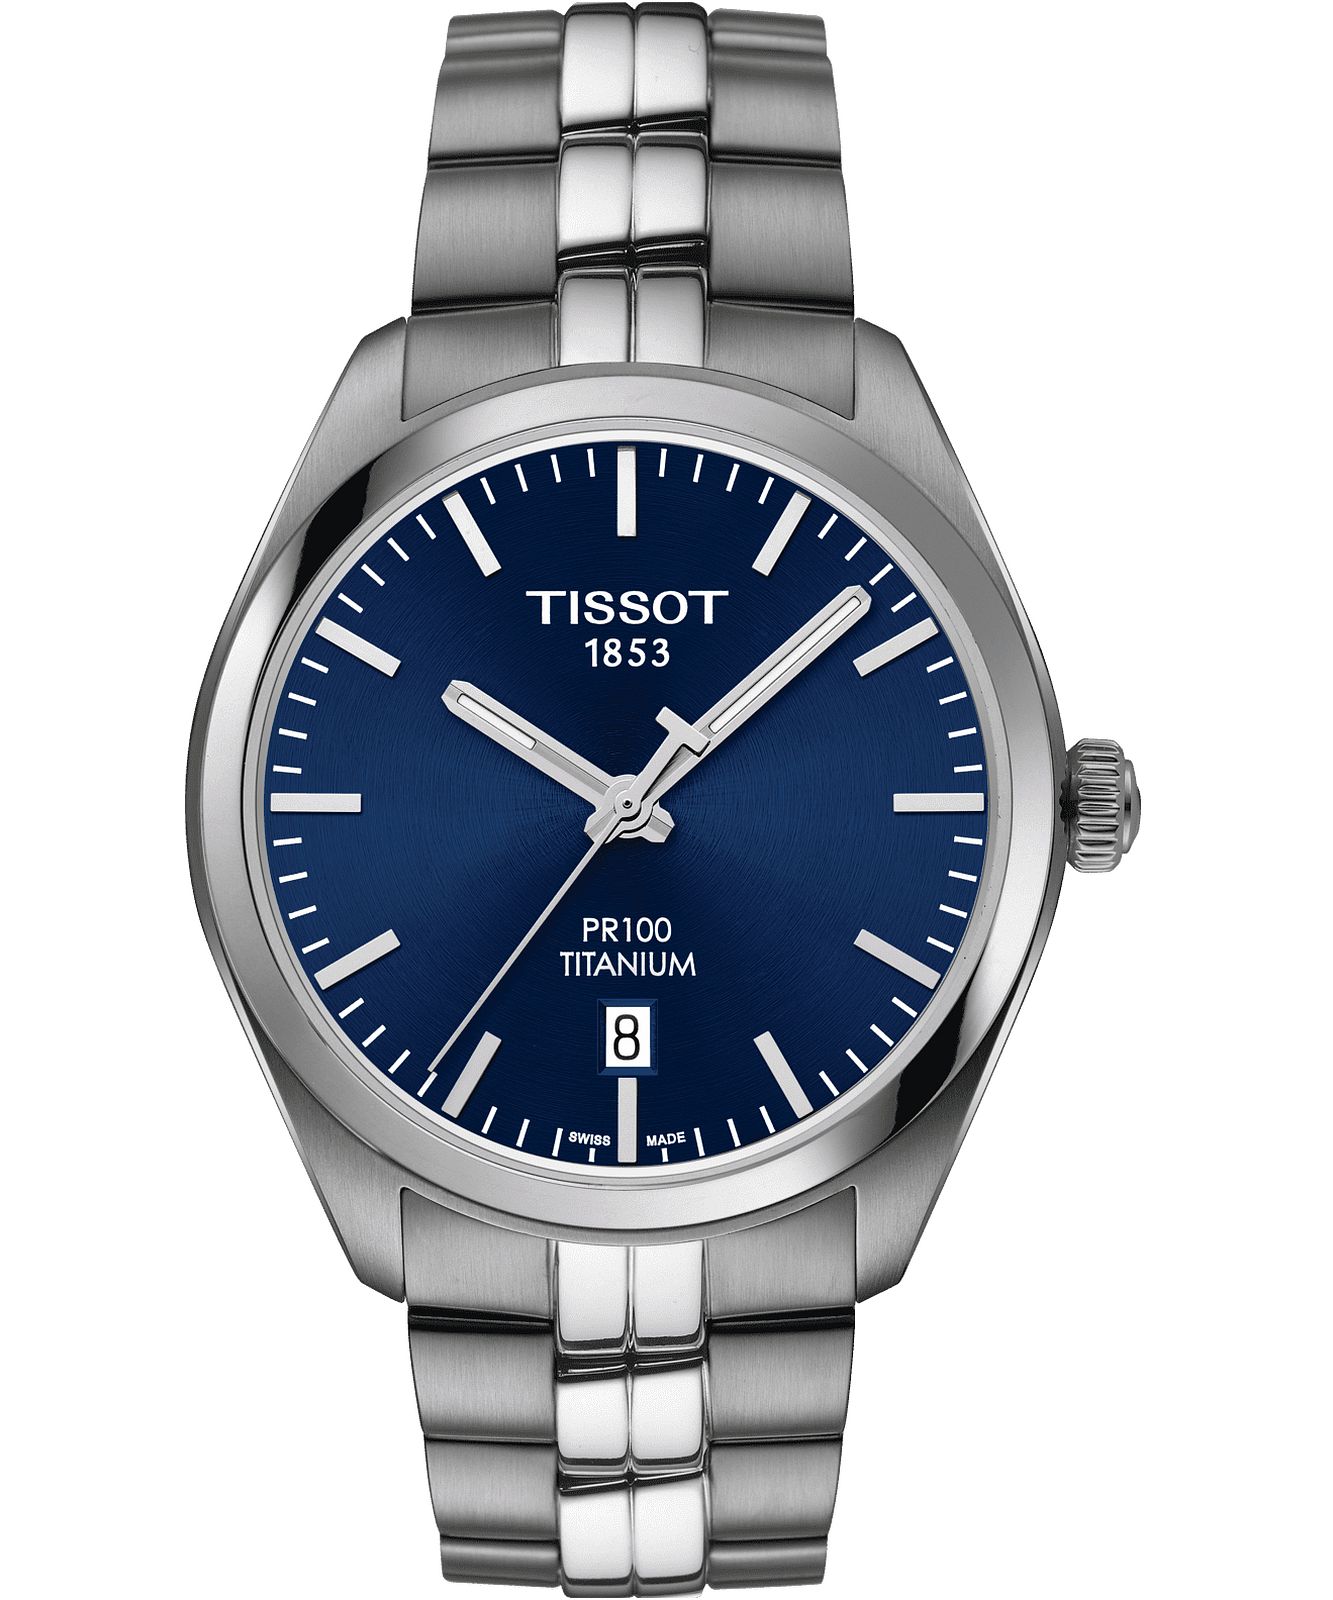 Tissot T101.410.44.041.00 - PR 100 Titanium Watch • Watchard.com